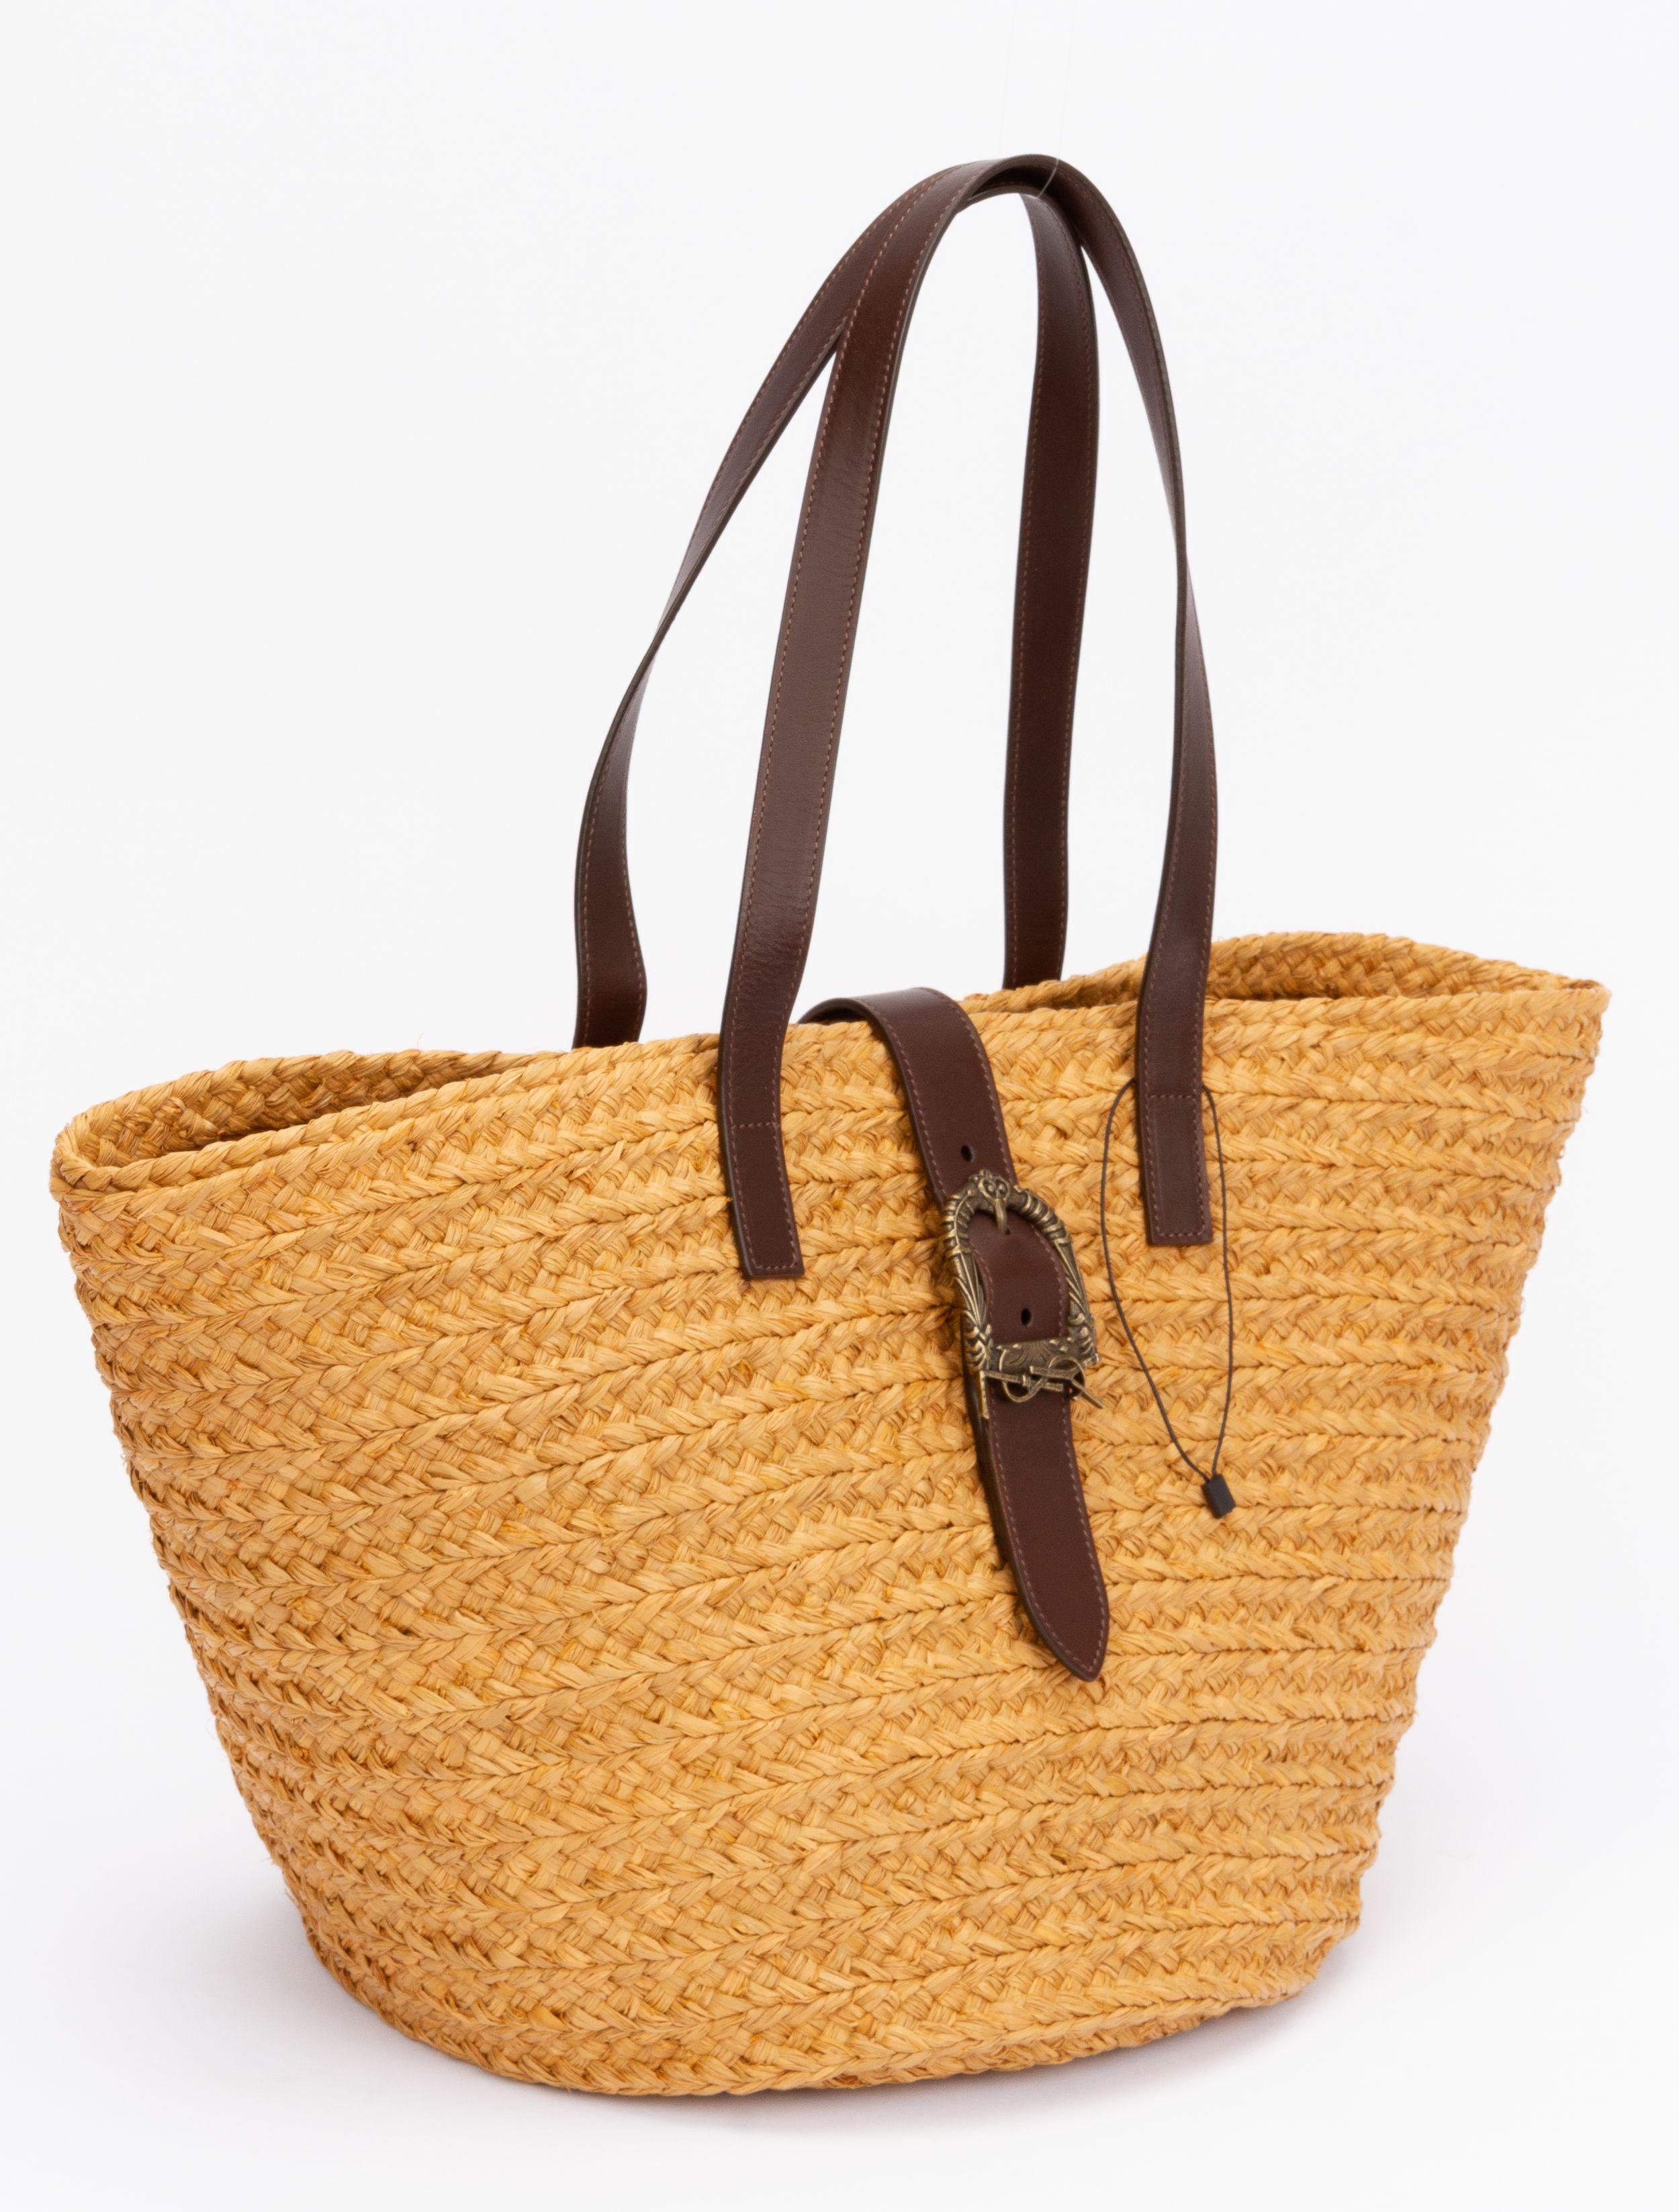 Yves Saint Laurent Tasche in Beige aus Weide. Die Tasche wird mit einem Riemen geschlossen, der mit einer Schnalle befestigt ist. Die Innenausstattung ist aus braunem Stoff. Die Tasche hat zwei Griffe (9,5